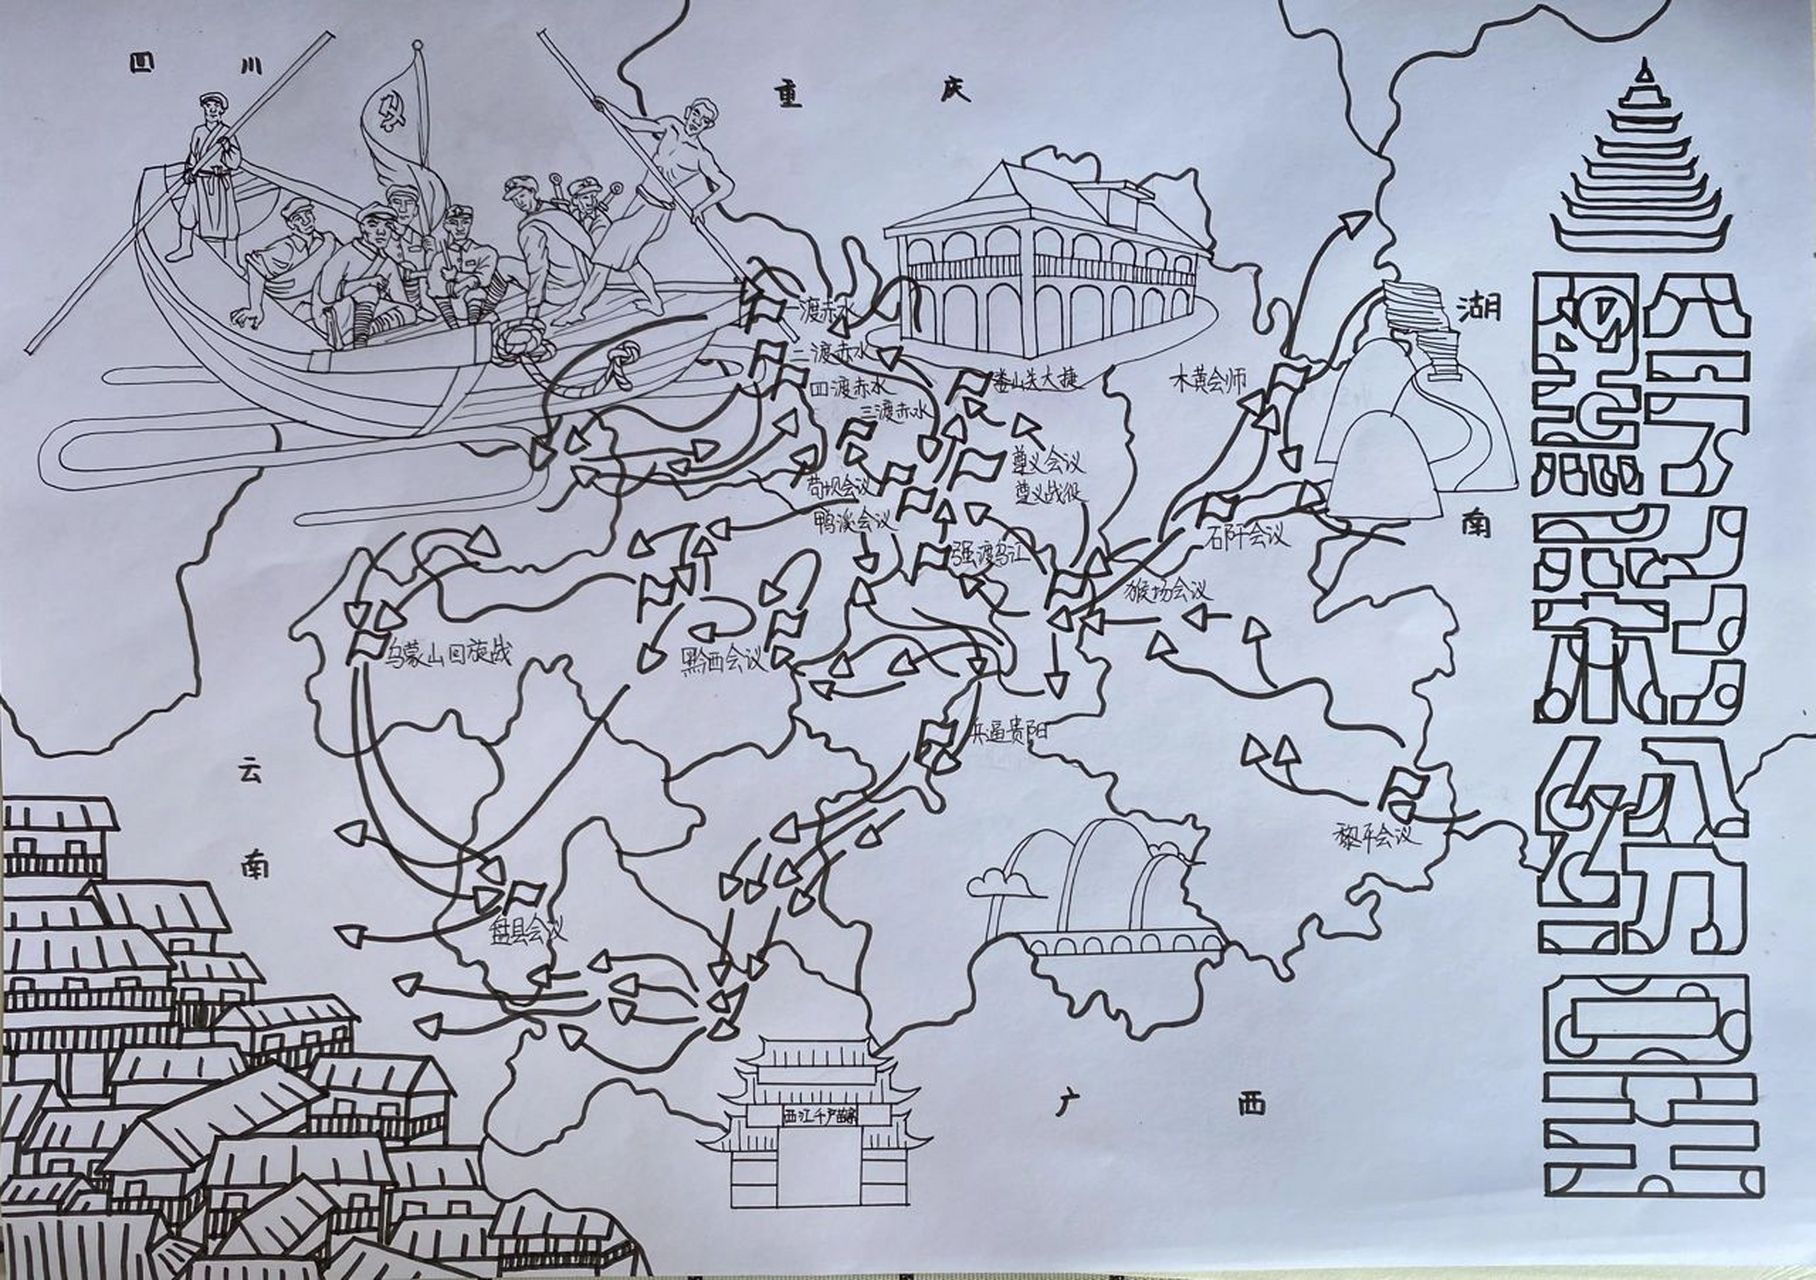 中国版图贵州手绘地图儿童画 已参赛,勿抄袭